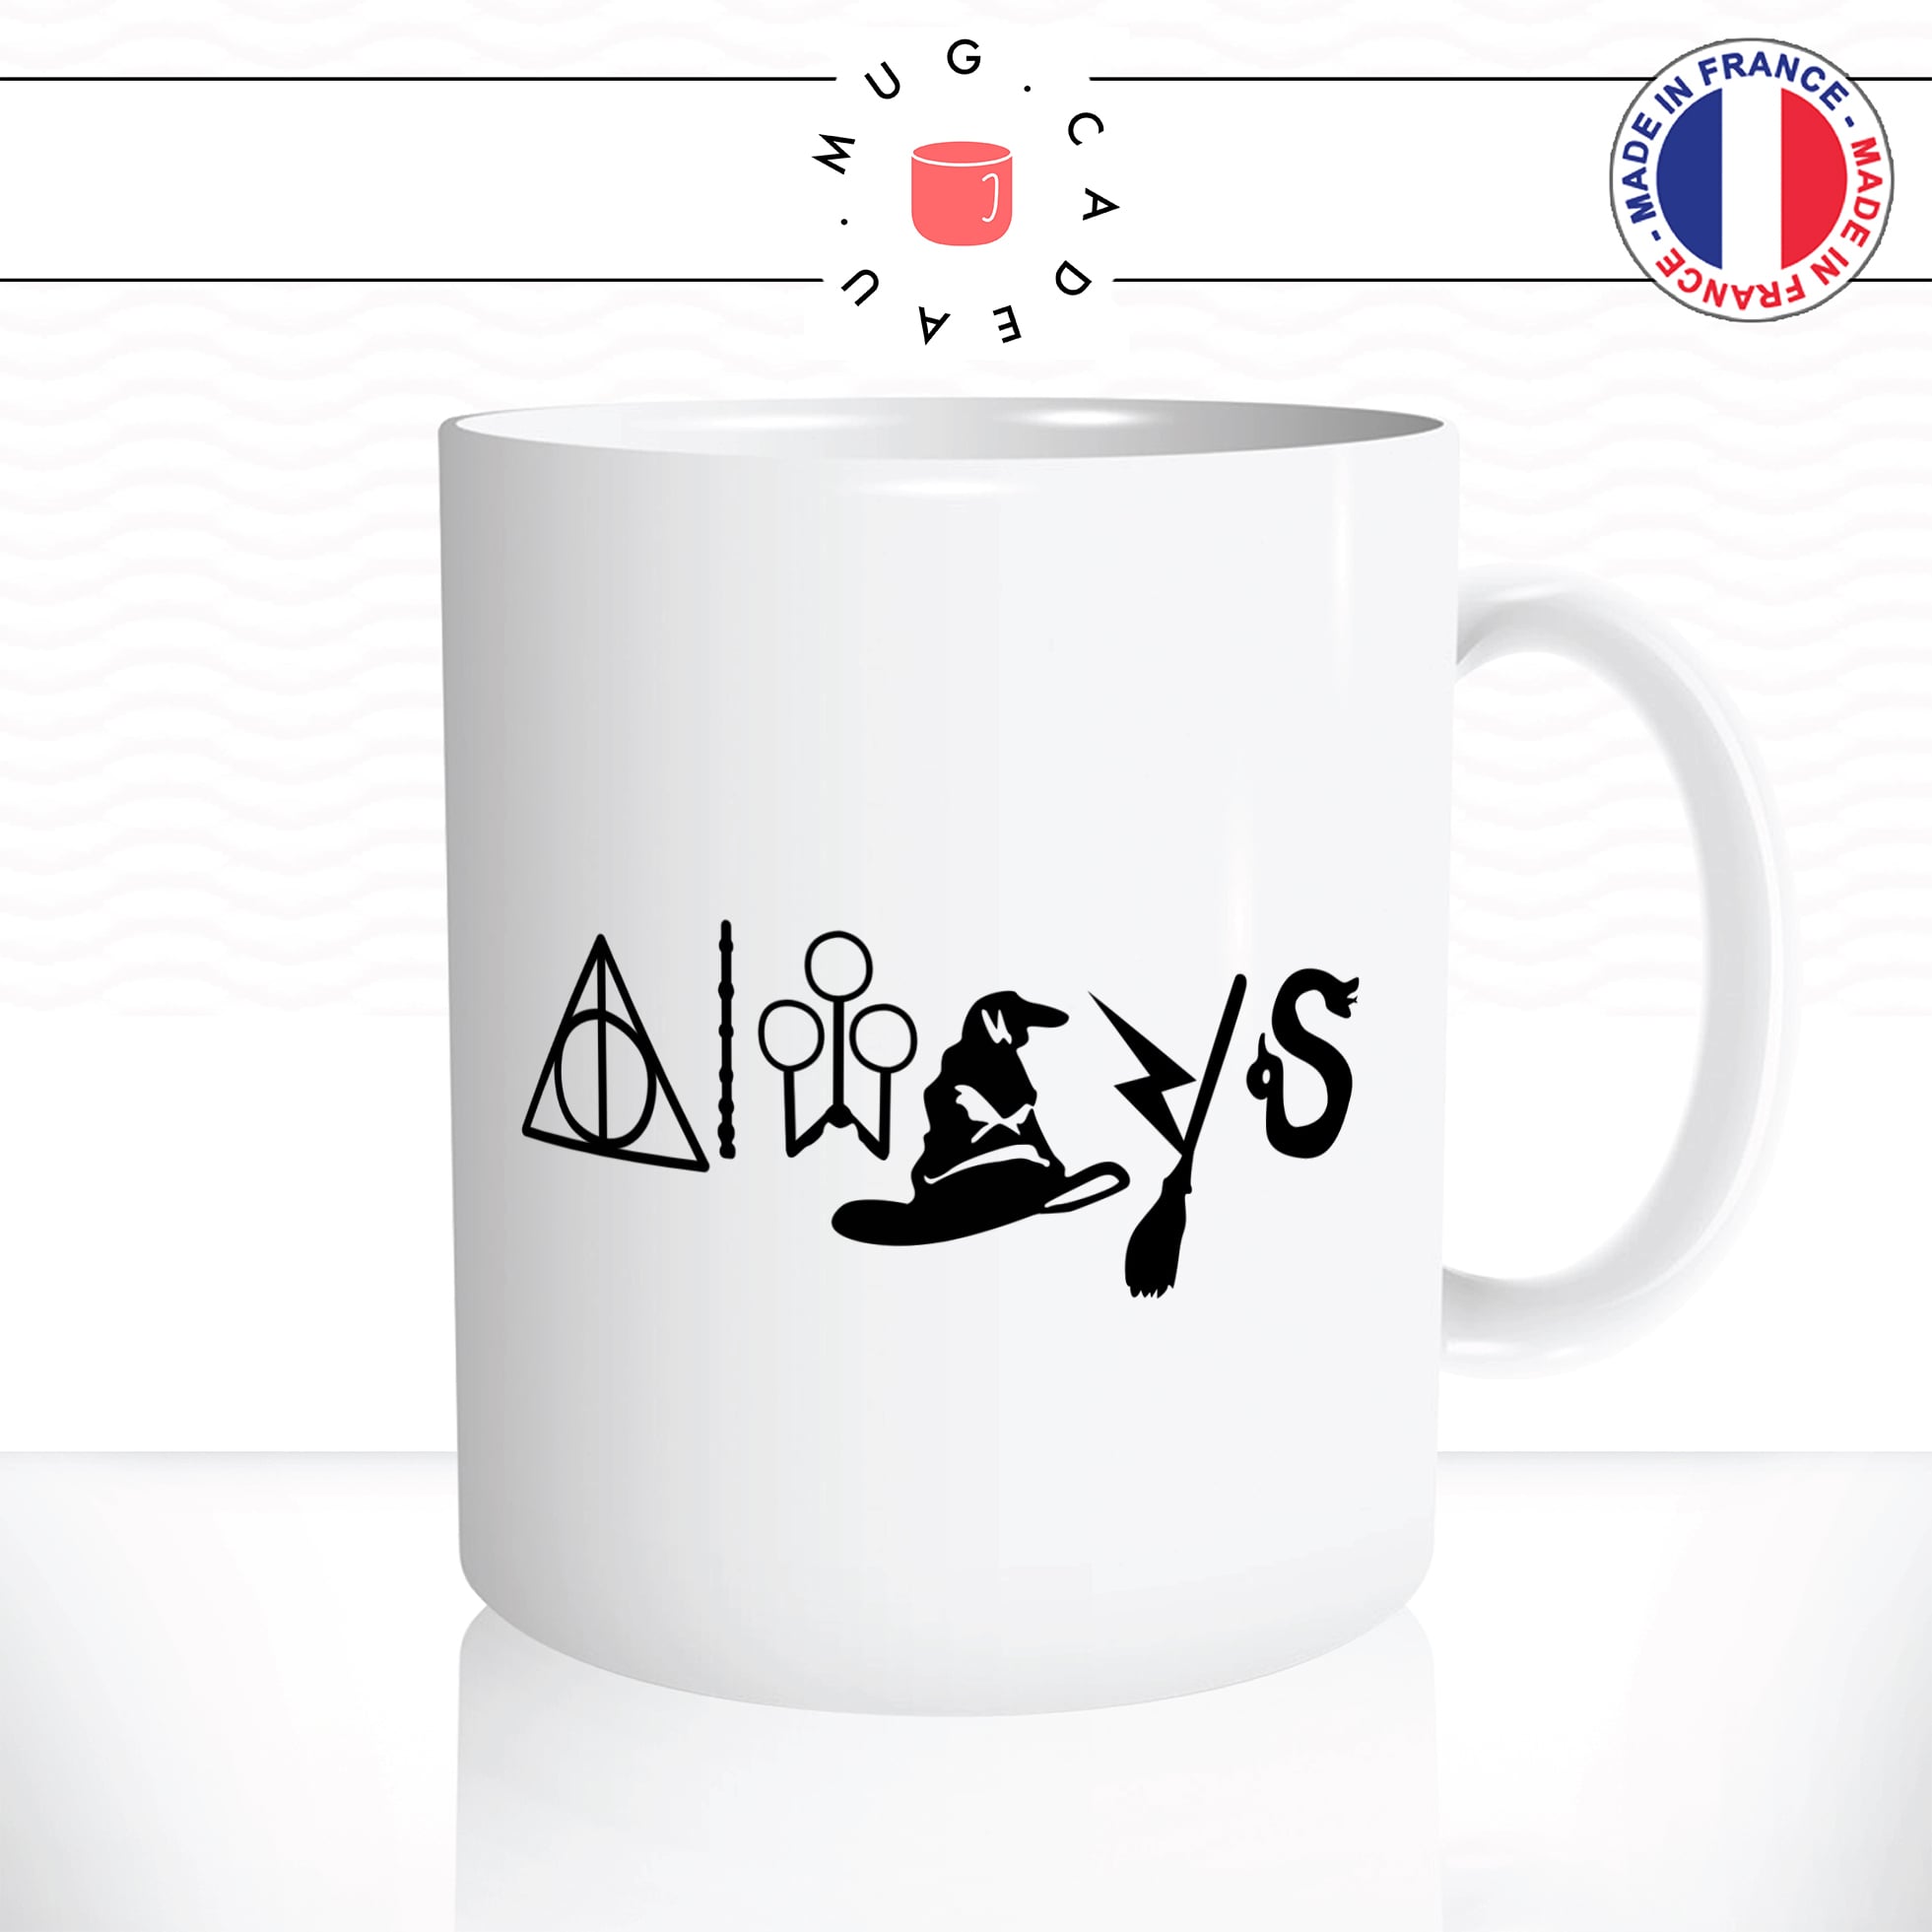 mug-tasse-film-harry-sorcier-always-baguette-magique-magie-café-thé-idée-cadeau-original-personnalisable2-min